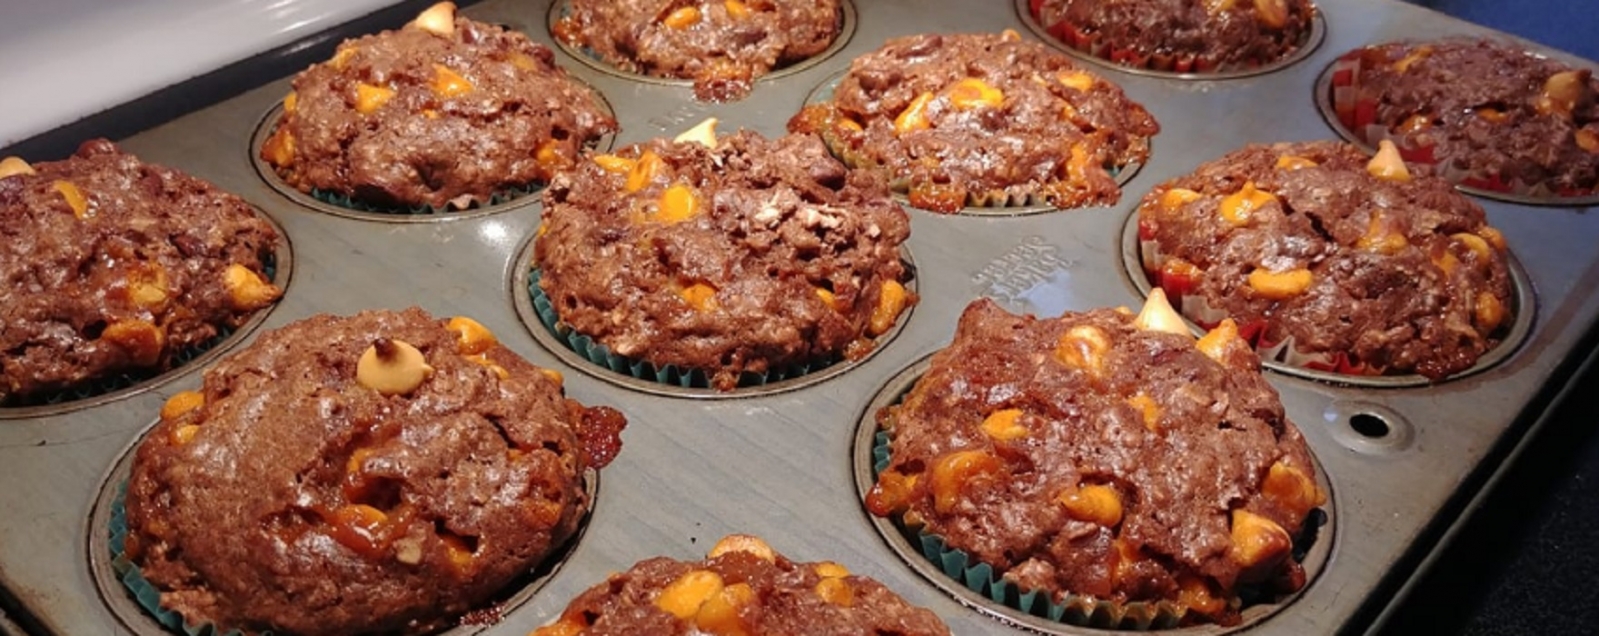 Recette: Muffin choco,caramel et gruau.